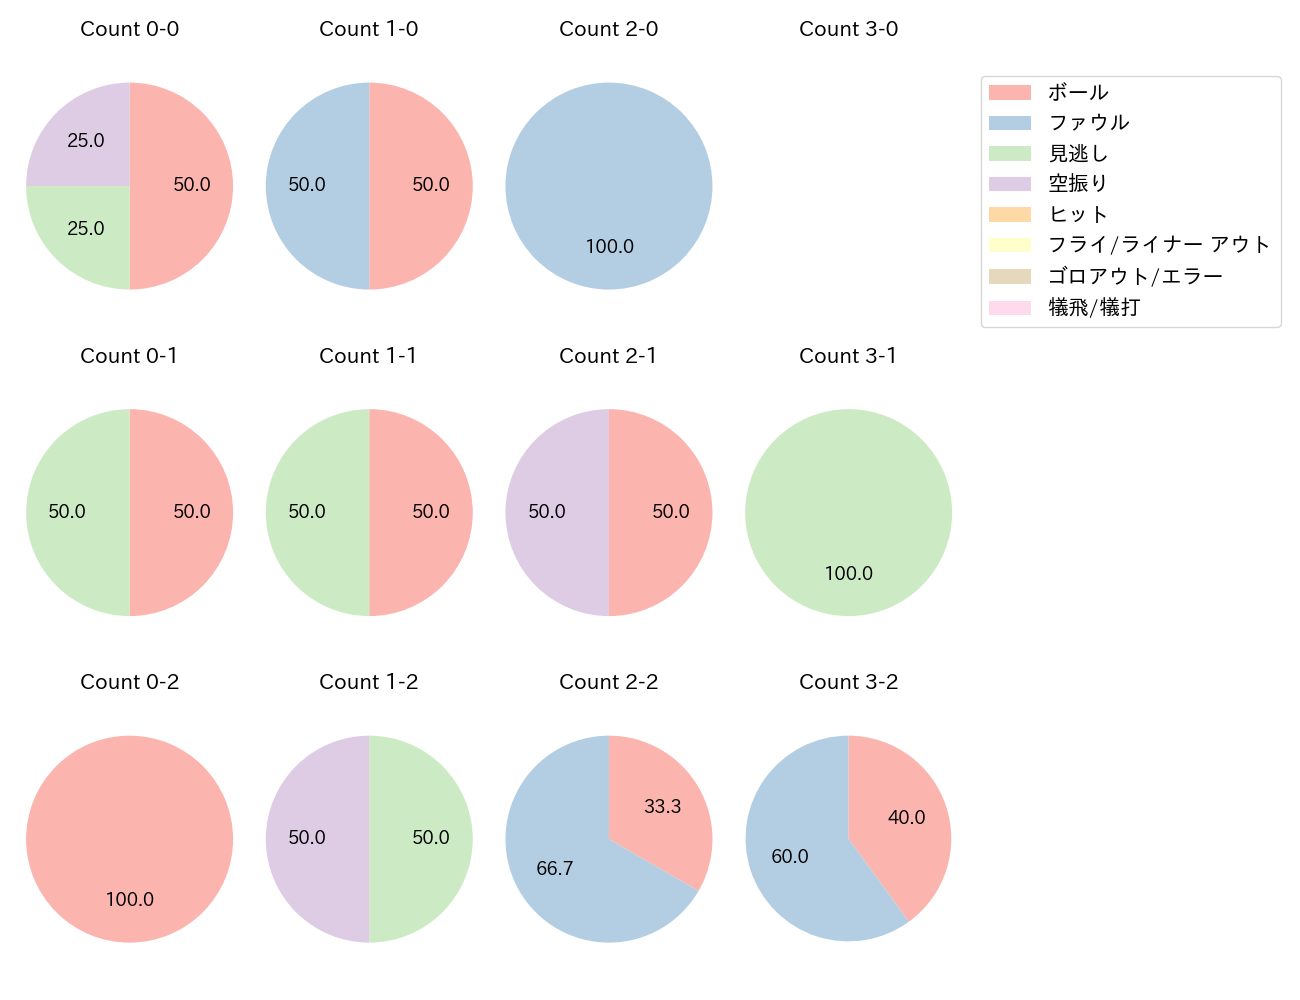 和田 康士朗の球数分布(2021年5月)